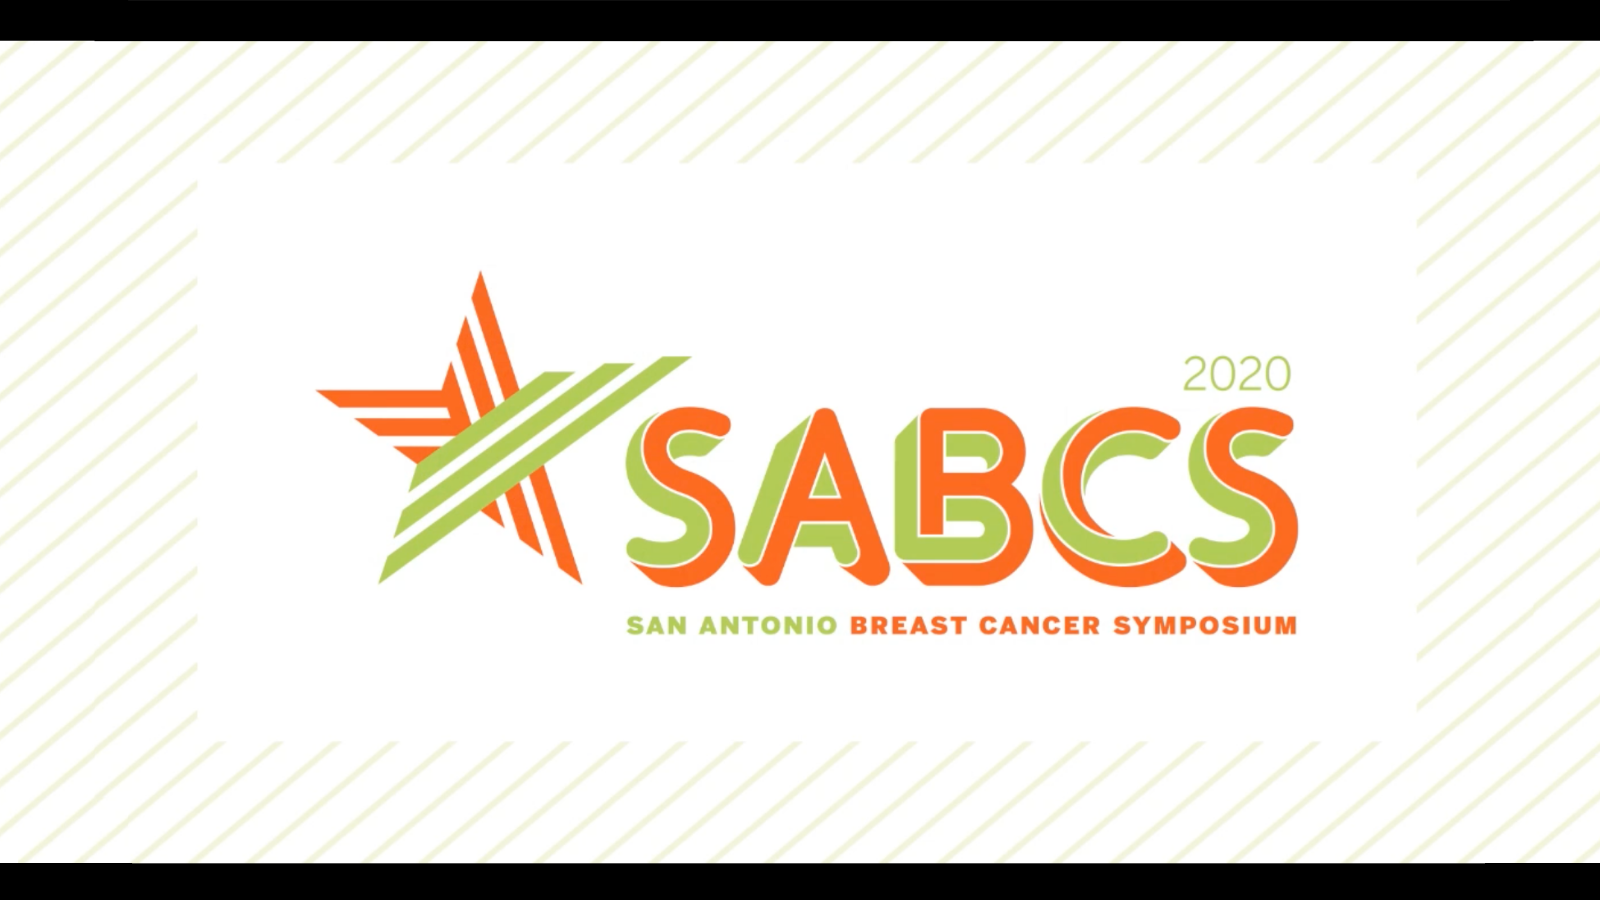 The SABCS Video Backdrop featuring the SABCS logo